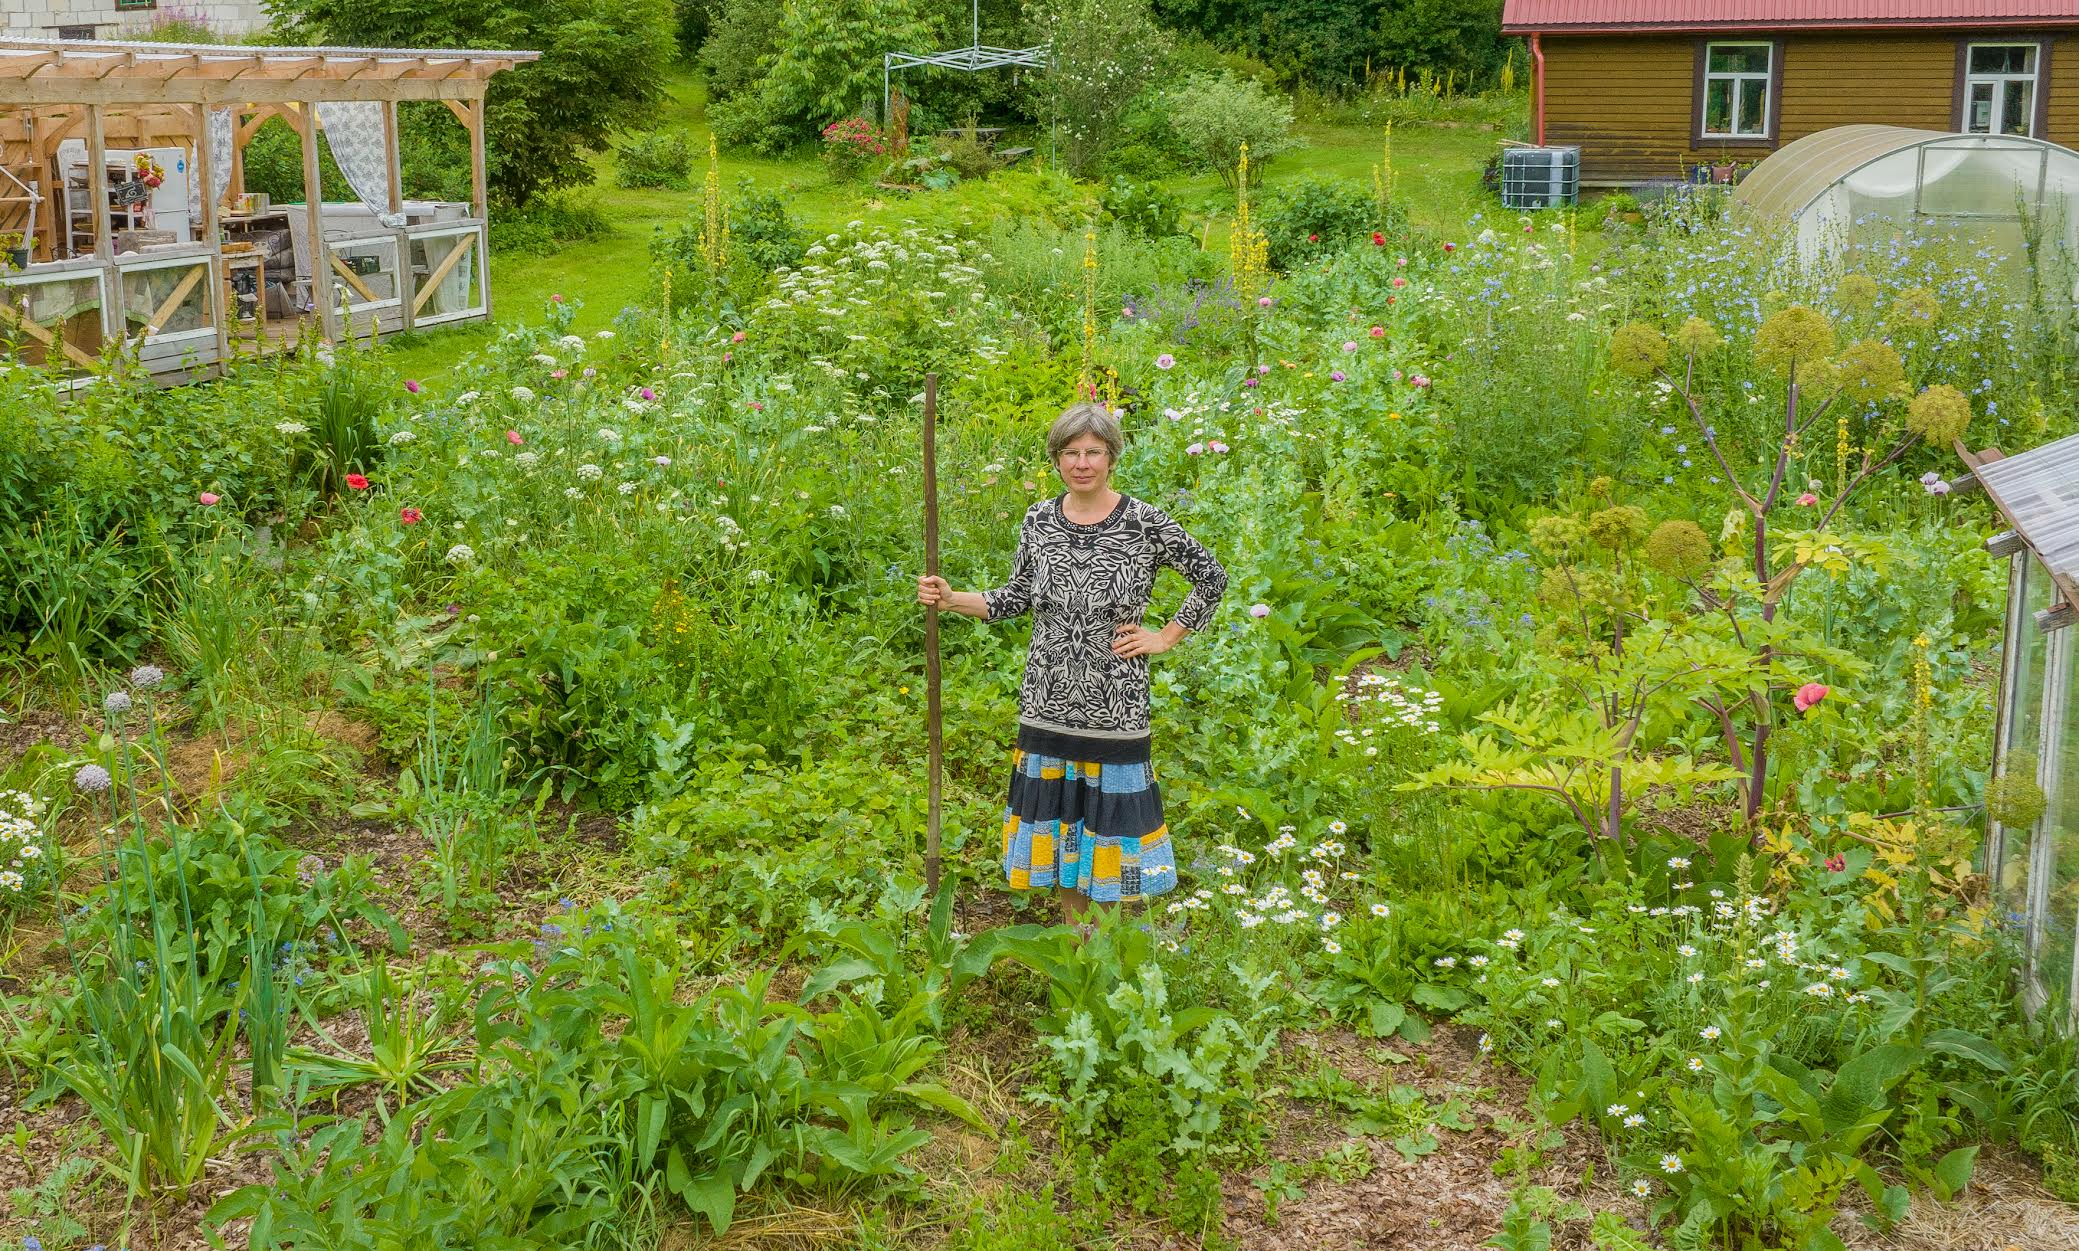 Vastseliina permakultuuri aia pidaja Triinu Guerrini kogemus näitab, et täitsa heina täis kasvanud maale permapeenra rajamisel ei ole lihtsalt pappide ja põhuga katmisest palju kasu. Vaja on kas labida või traktori abi ning põhjalikku umbrohujuurte ärakorjamist. Fotod: AIGAR NAGEL